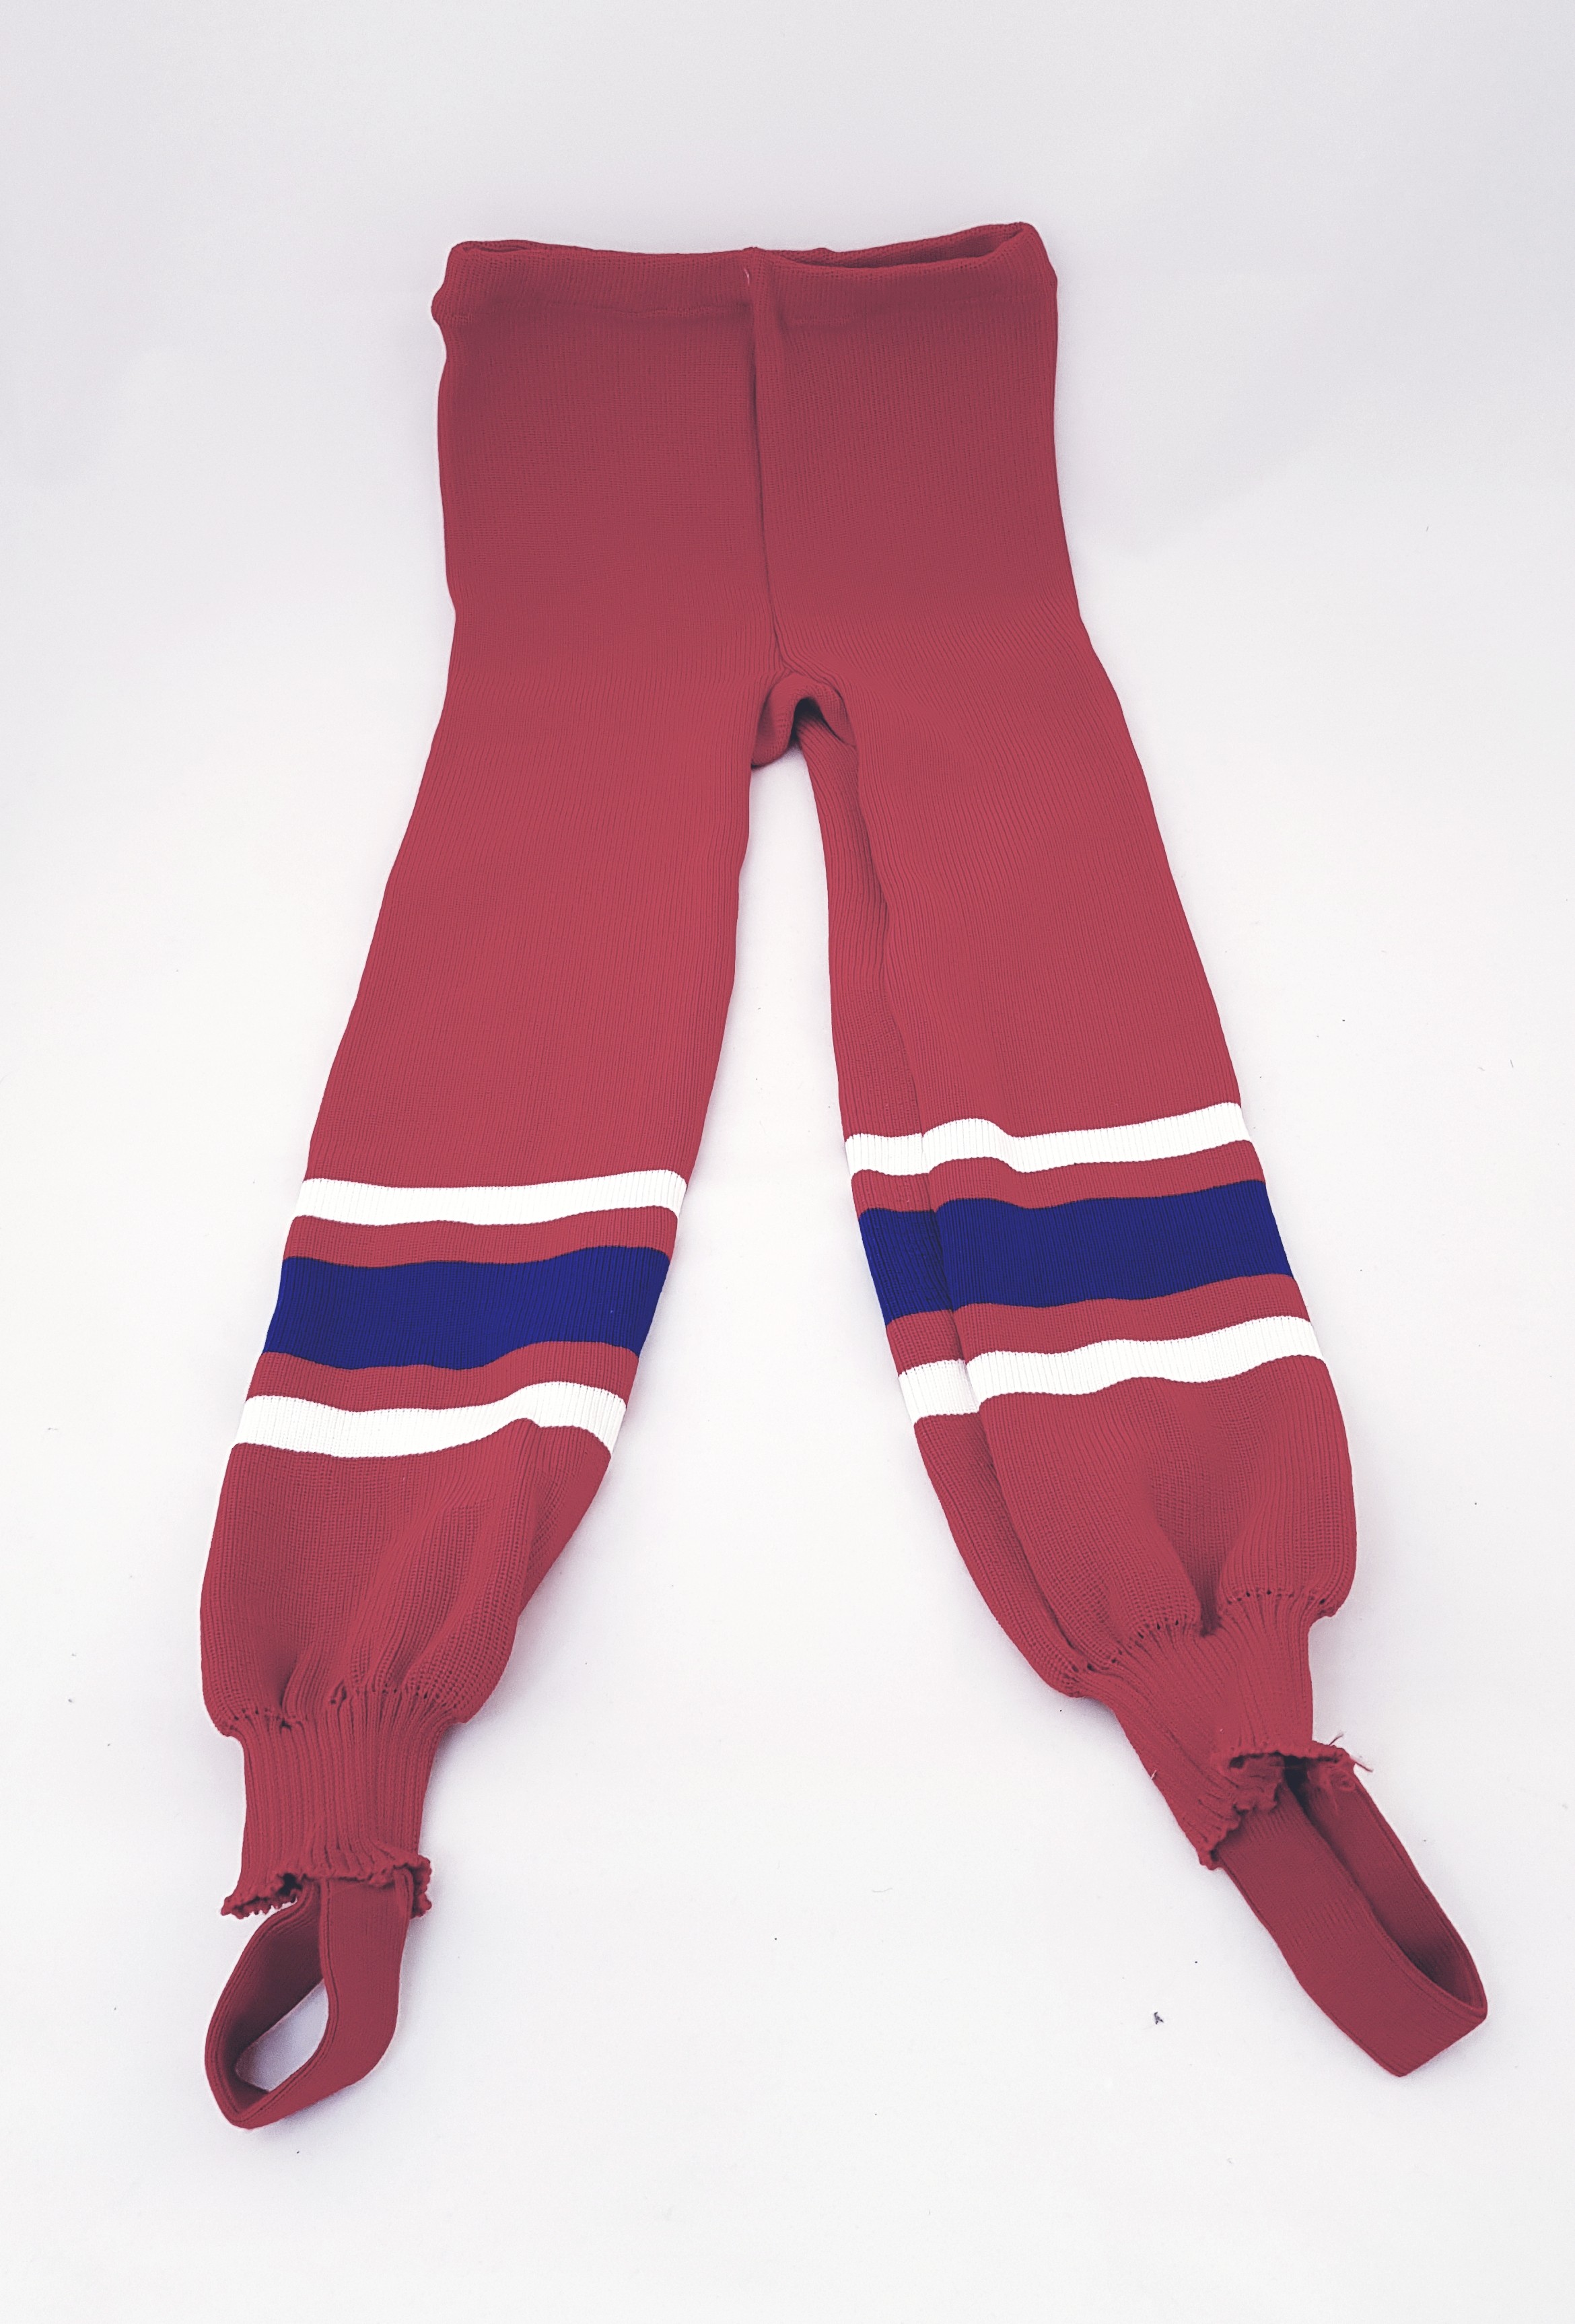 HOKEJAM Knit Intermediate Hockey Sock Pants#002